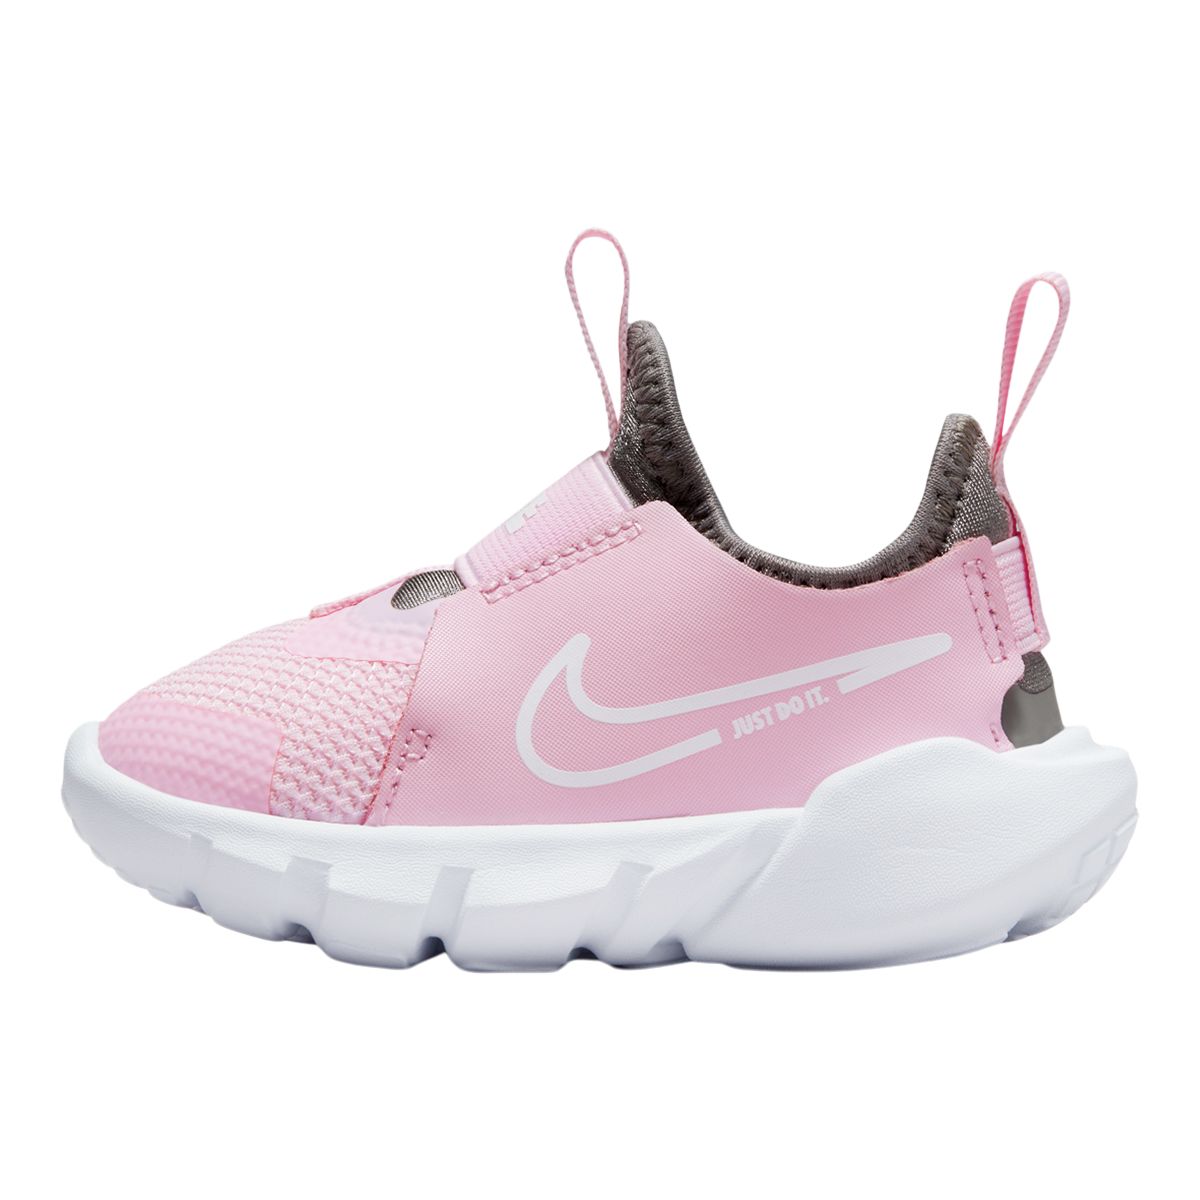 Nike Toddler Girls' Flex Runner 2 Running Shoes